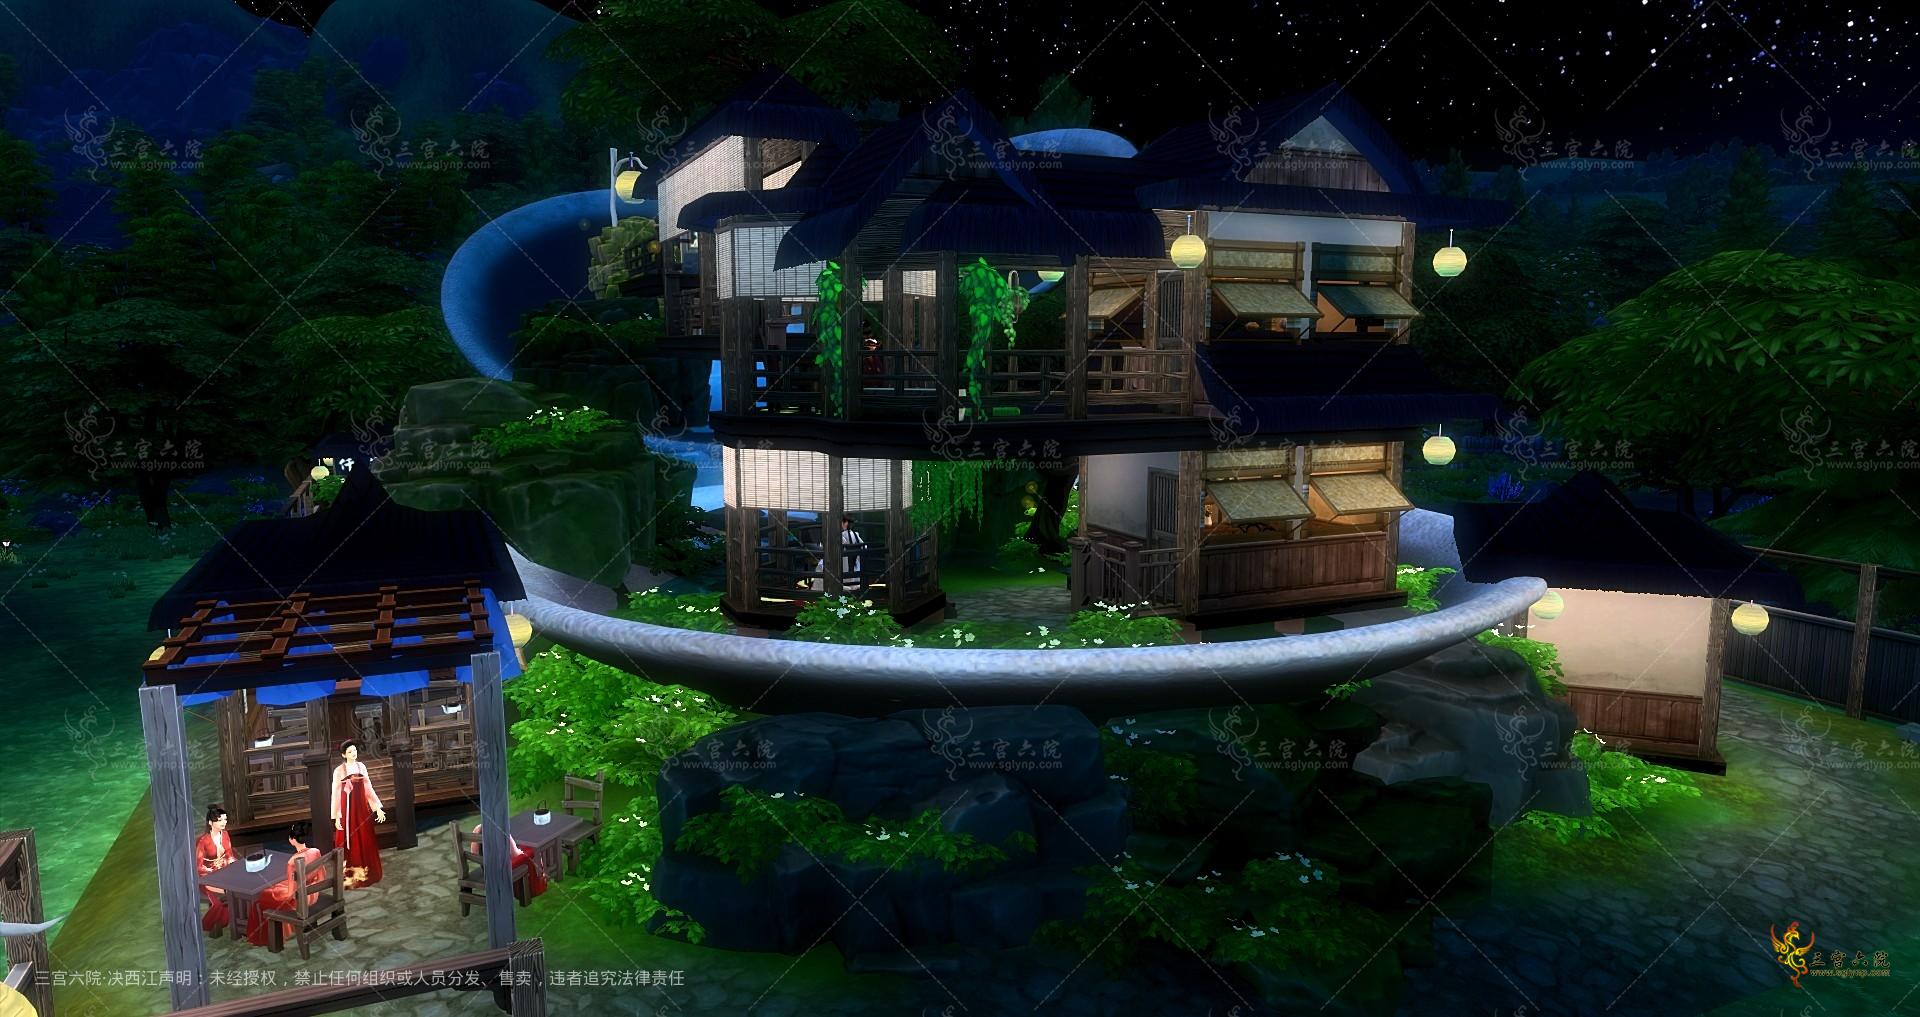 Sims 4 Screenshot 2022.07.28 - 23.46.57.59.png